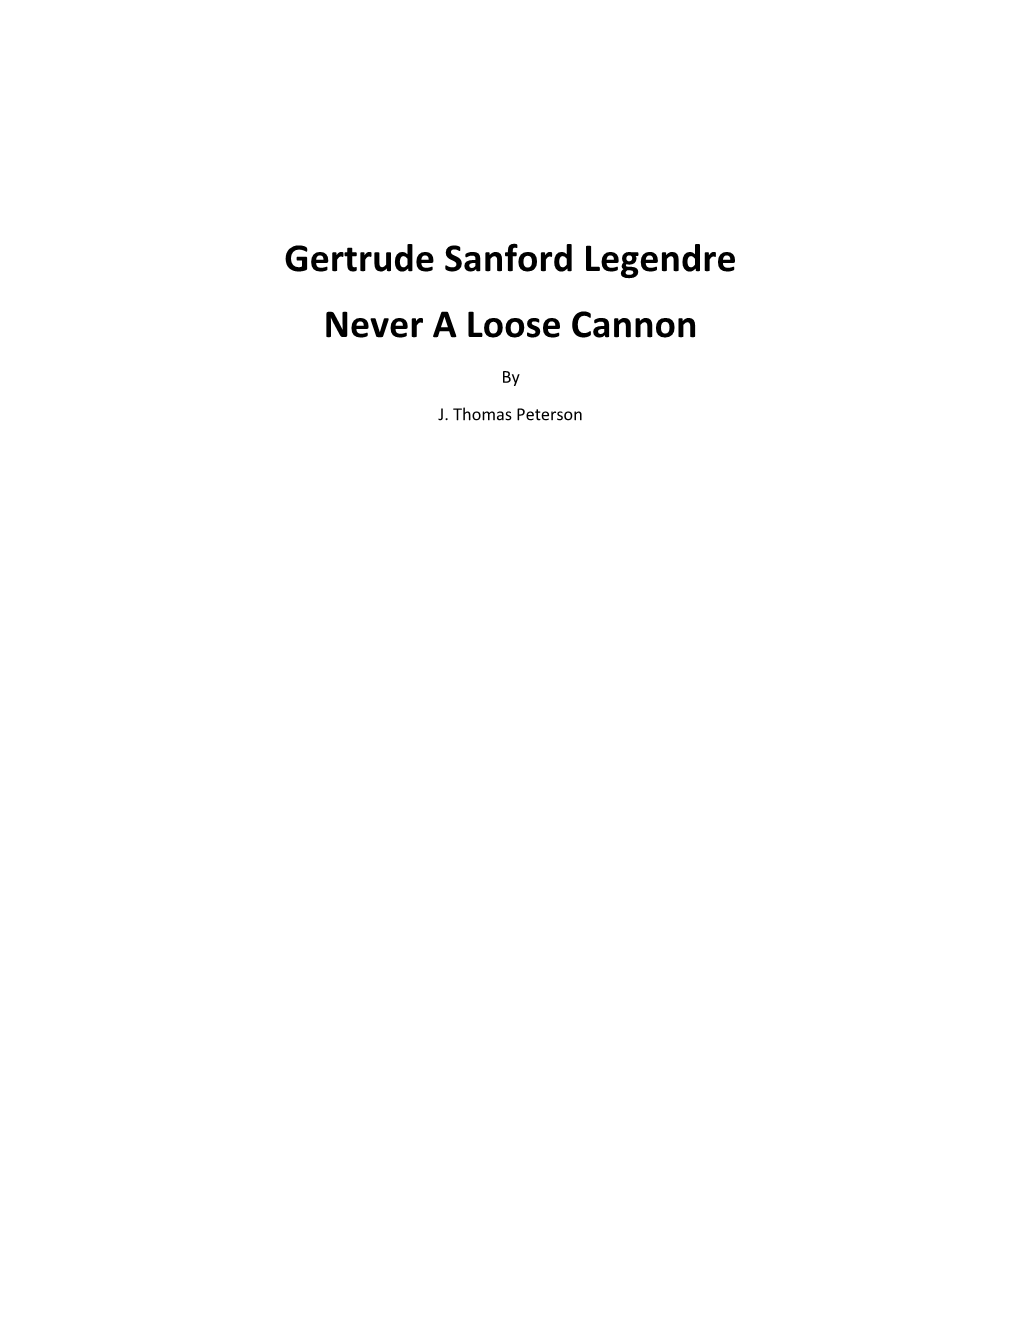 Gertrude Sanford Legendre Never a Loose Cannon